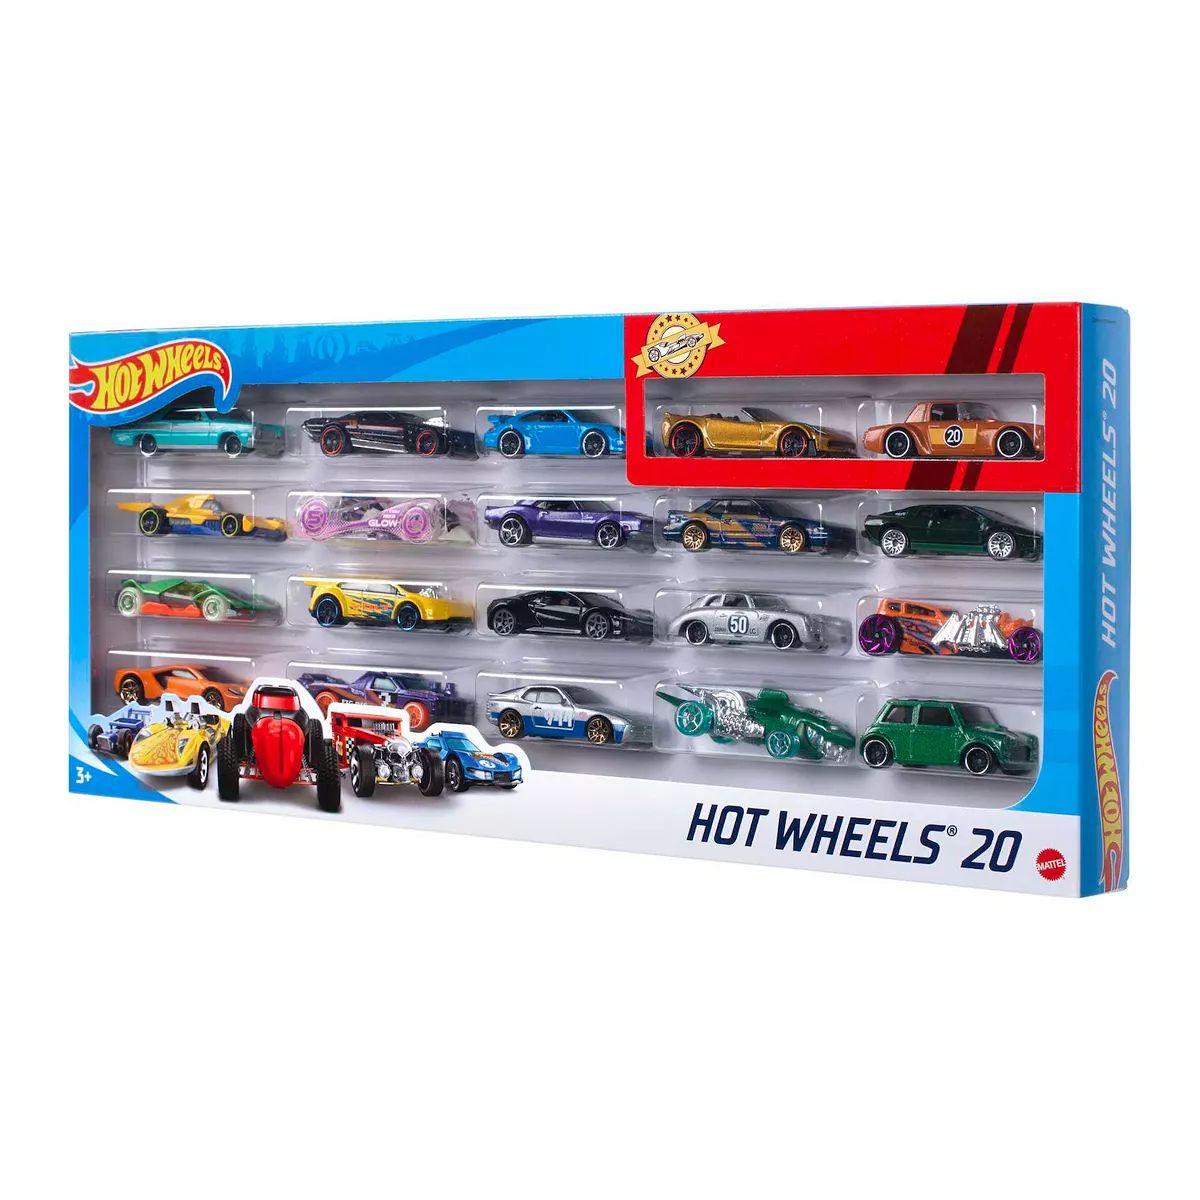 Hot Wheels 20 Gift Pack by Mattel | Kohl's